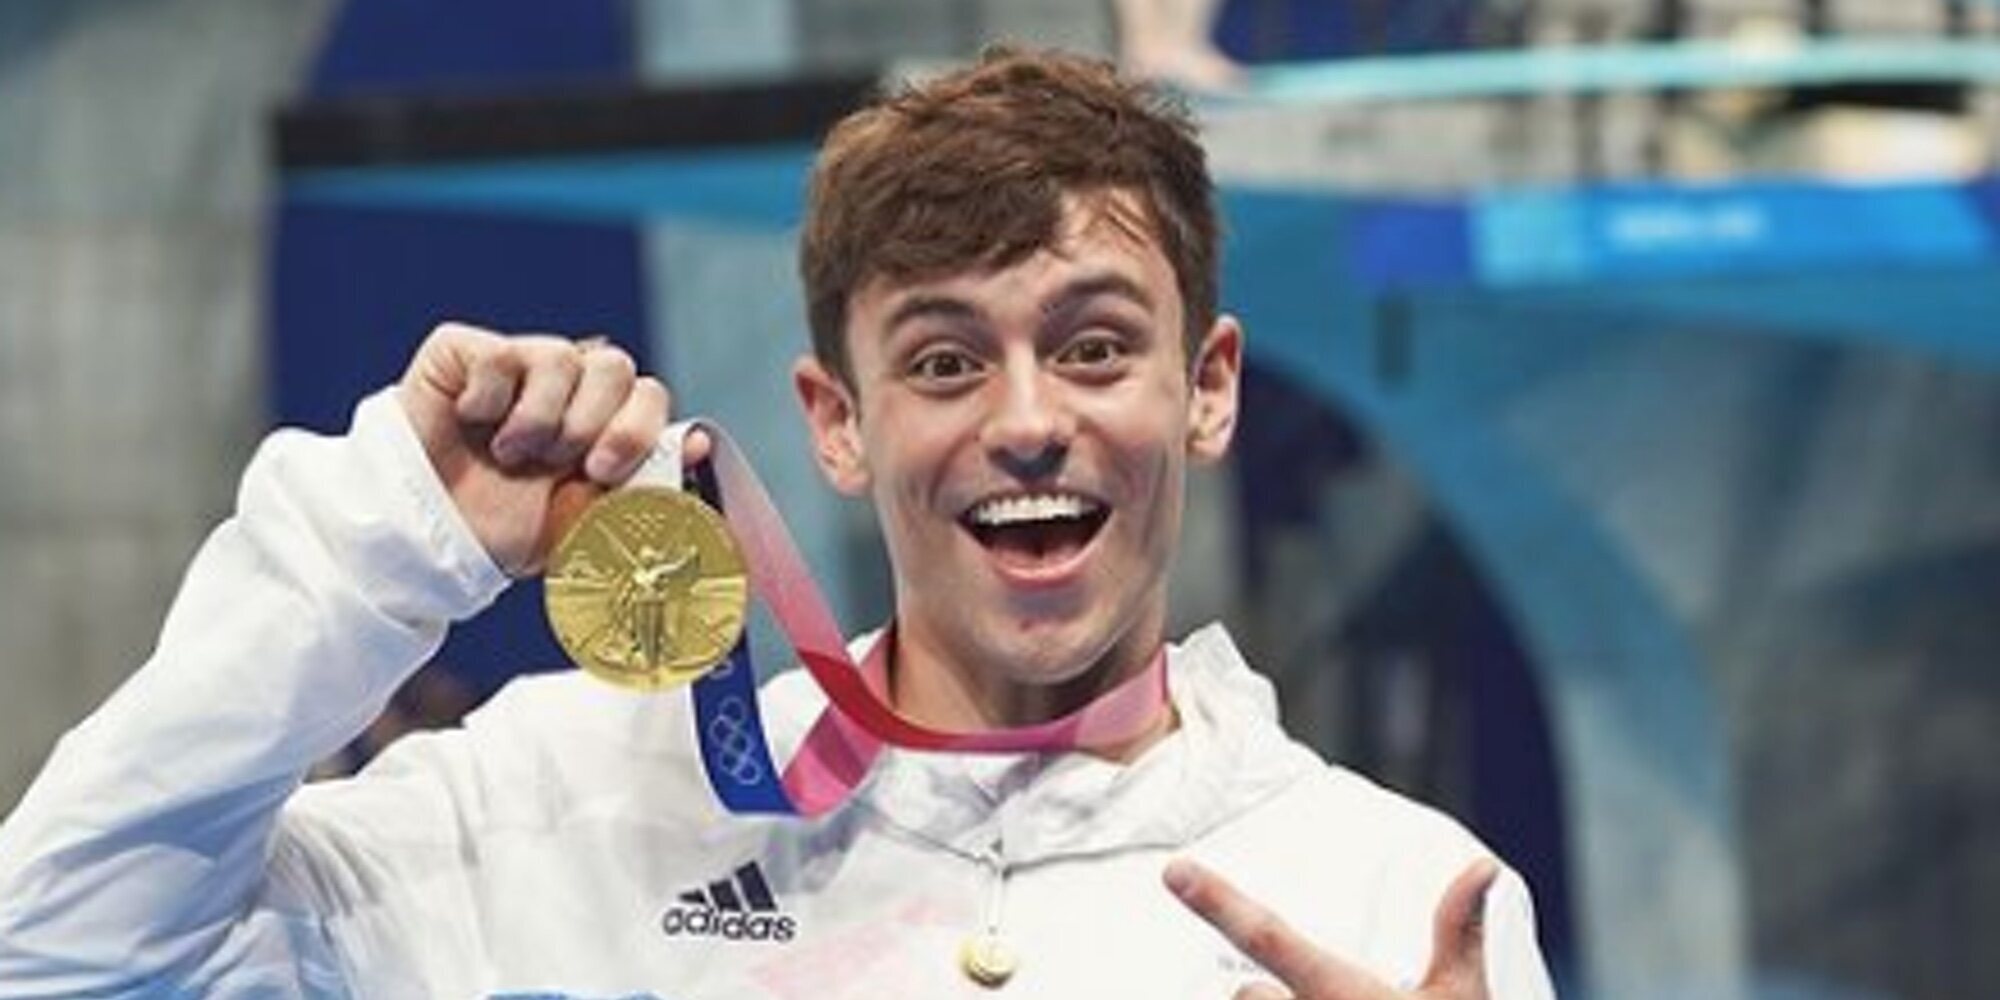 El conmovedor mensaje de Tom Daley tras su victoria: "Estoy orgulloso de ser gay y campeón olímpico"